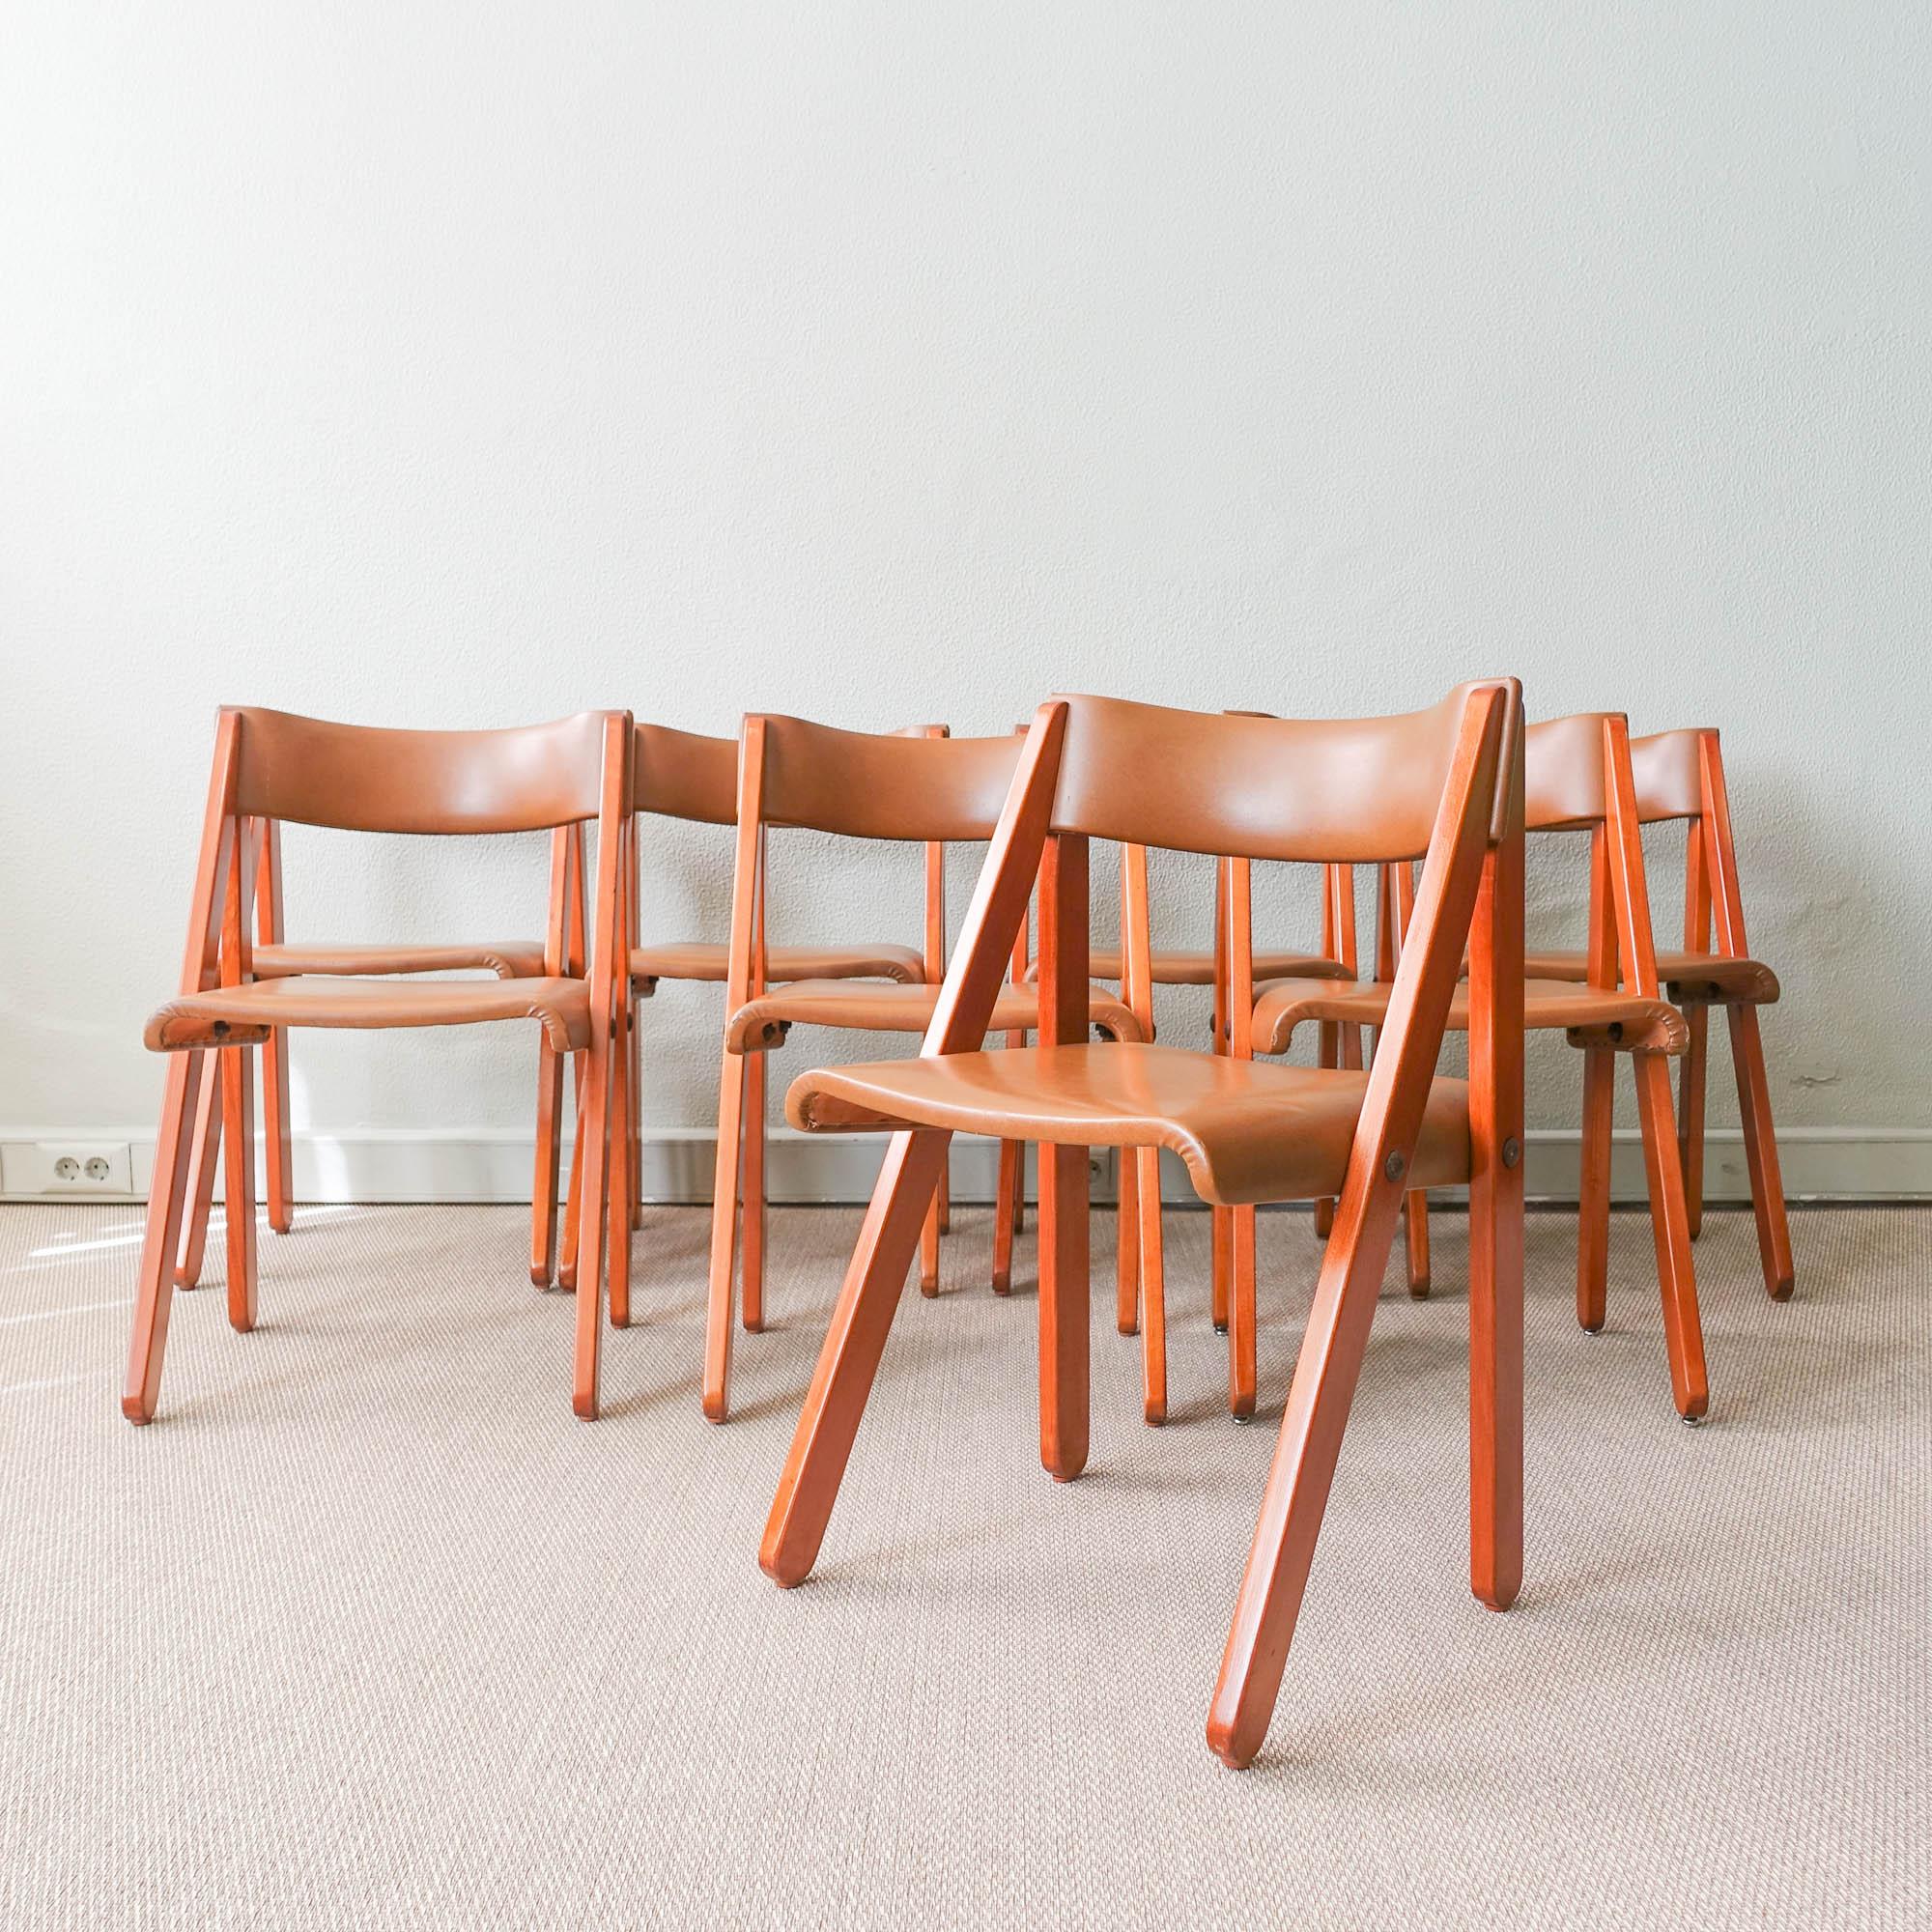 Cet ensemble de huit chaises a été conçu par Gastão Machado pour Móveis Olaio, au Portugal, en 1978. Gastão Machado a conçu ce modèle pour les chambres de jeunes, mais sa structure amovible en contreplaqué moulé lui a également permis d'être utilisé